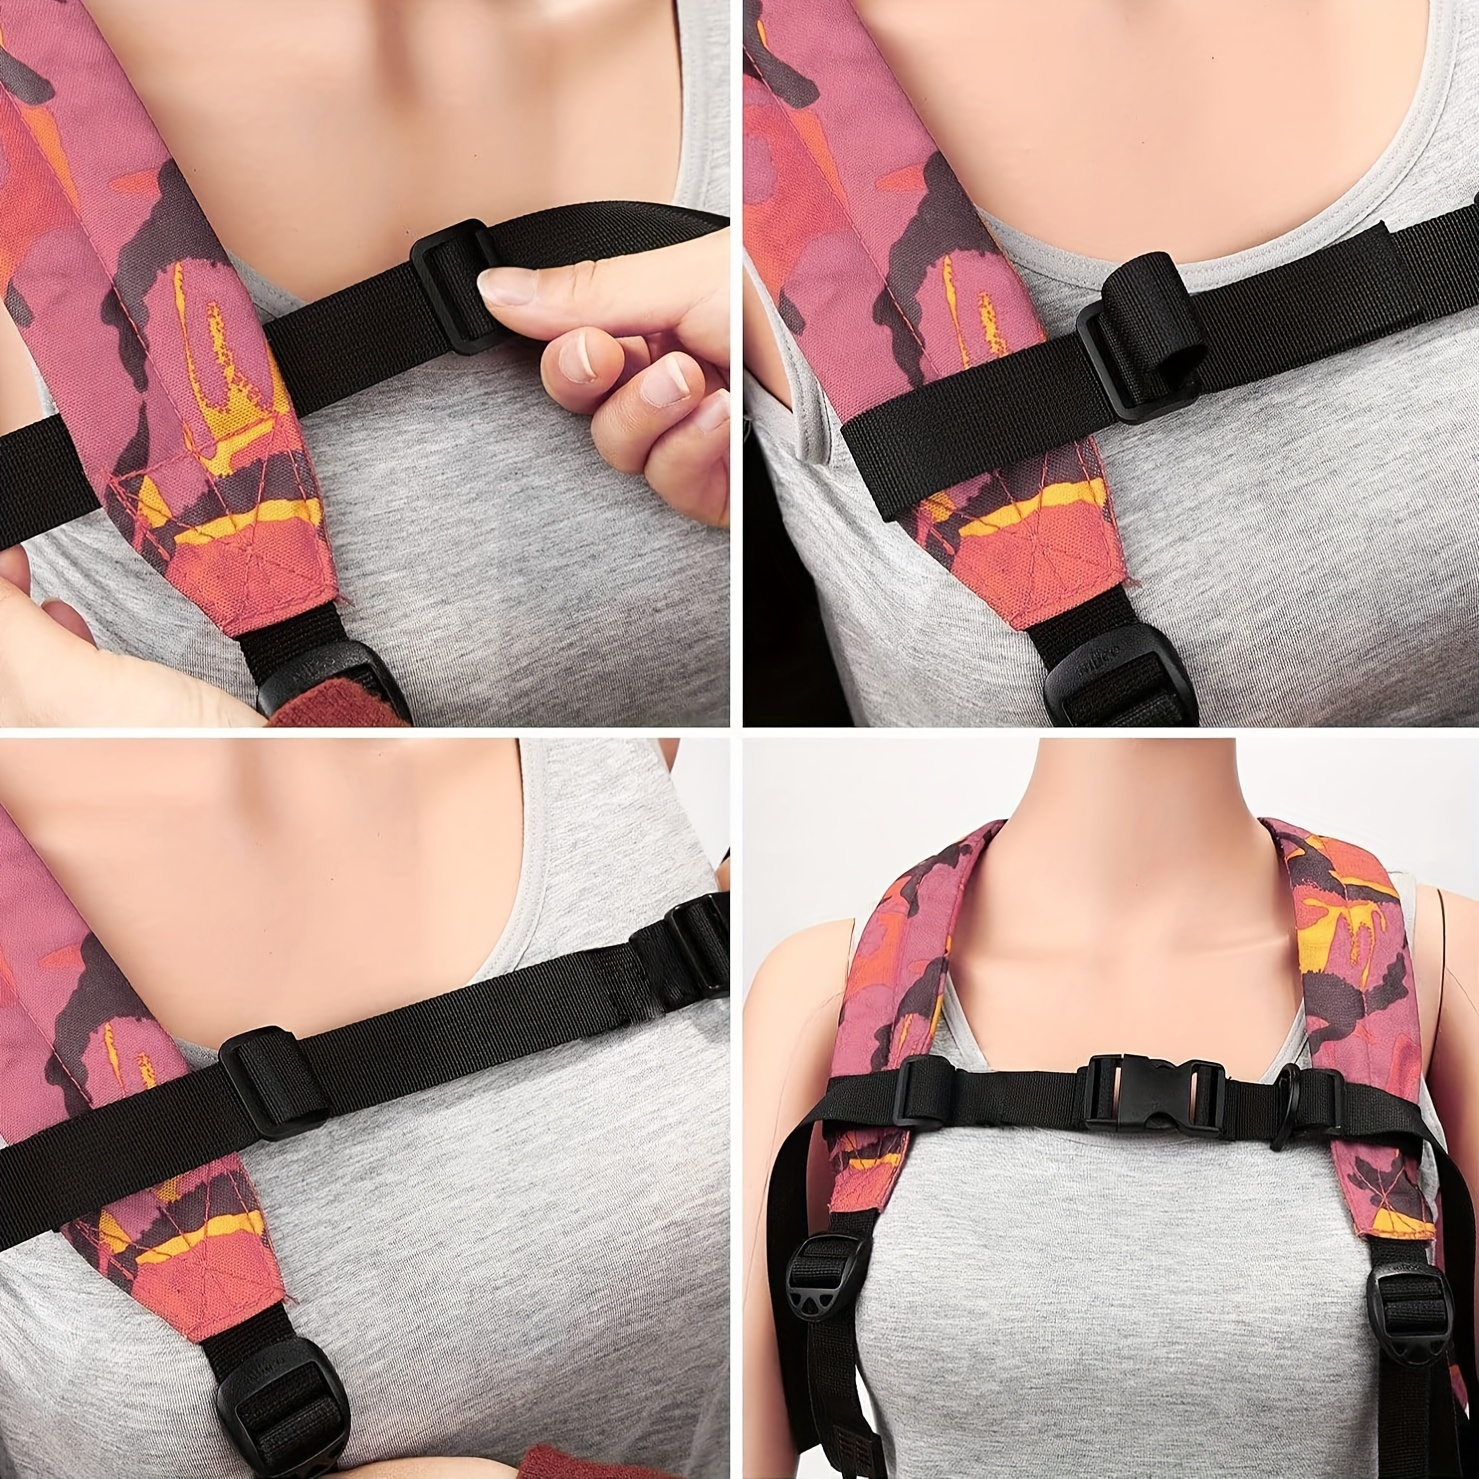 Adjustable Backpack Sack Bag Webbing Sternum Buckle Clip Straps Chest  Harness